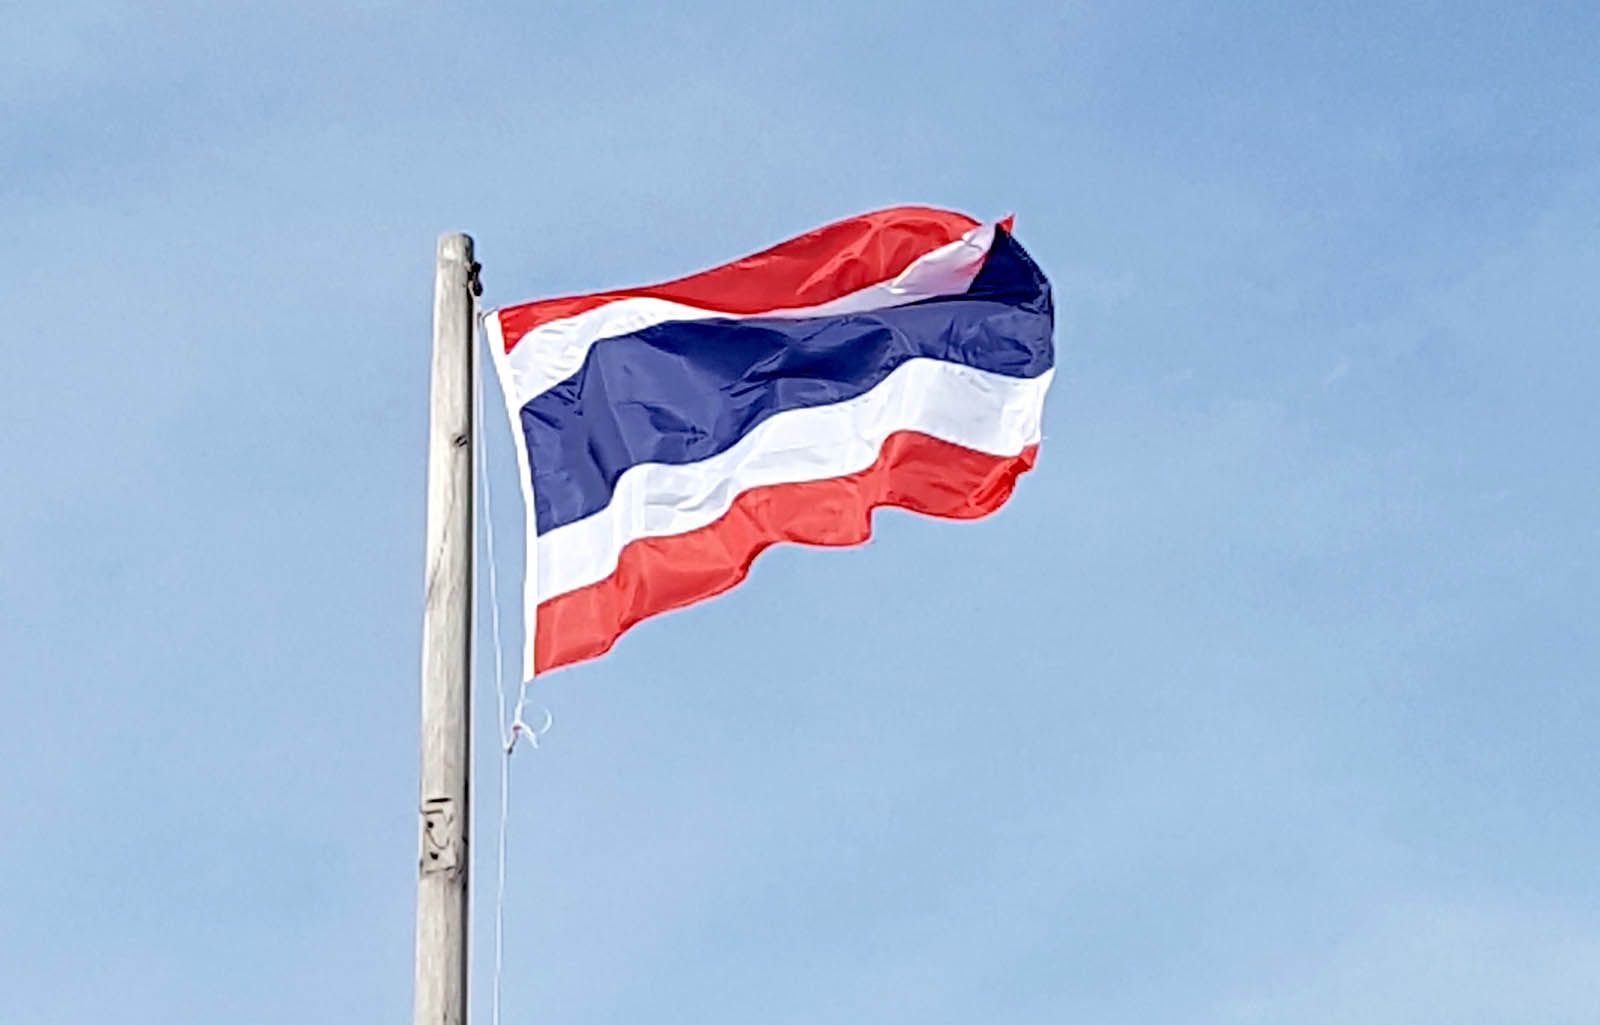 fun thailand facts - thai flag